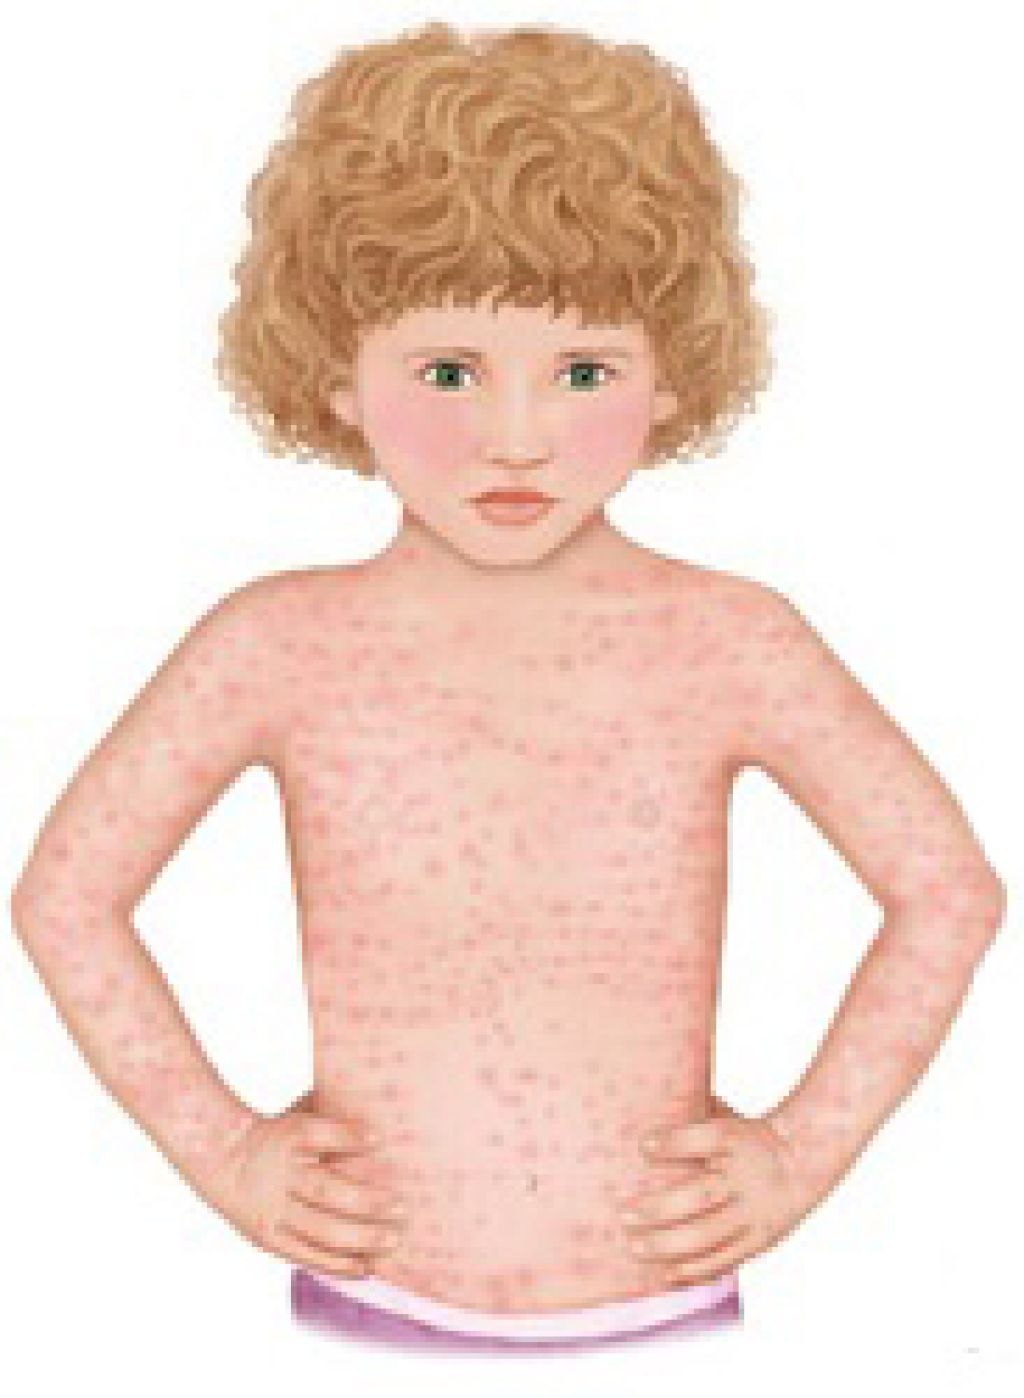 Розеола у детей: причины, симптомы, методы диагностики, лечения и профилактики розеолы  